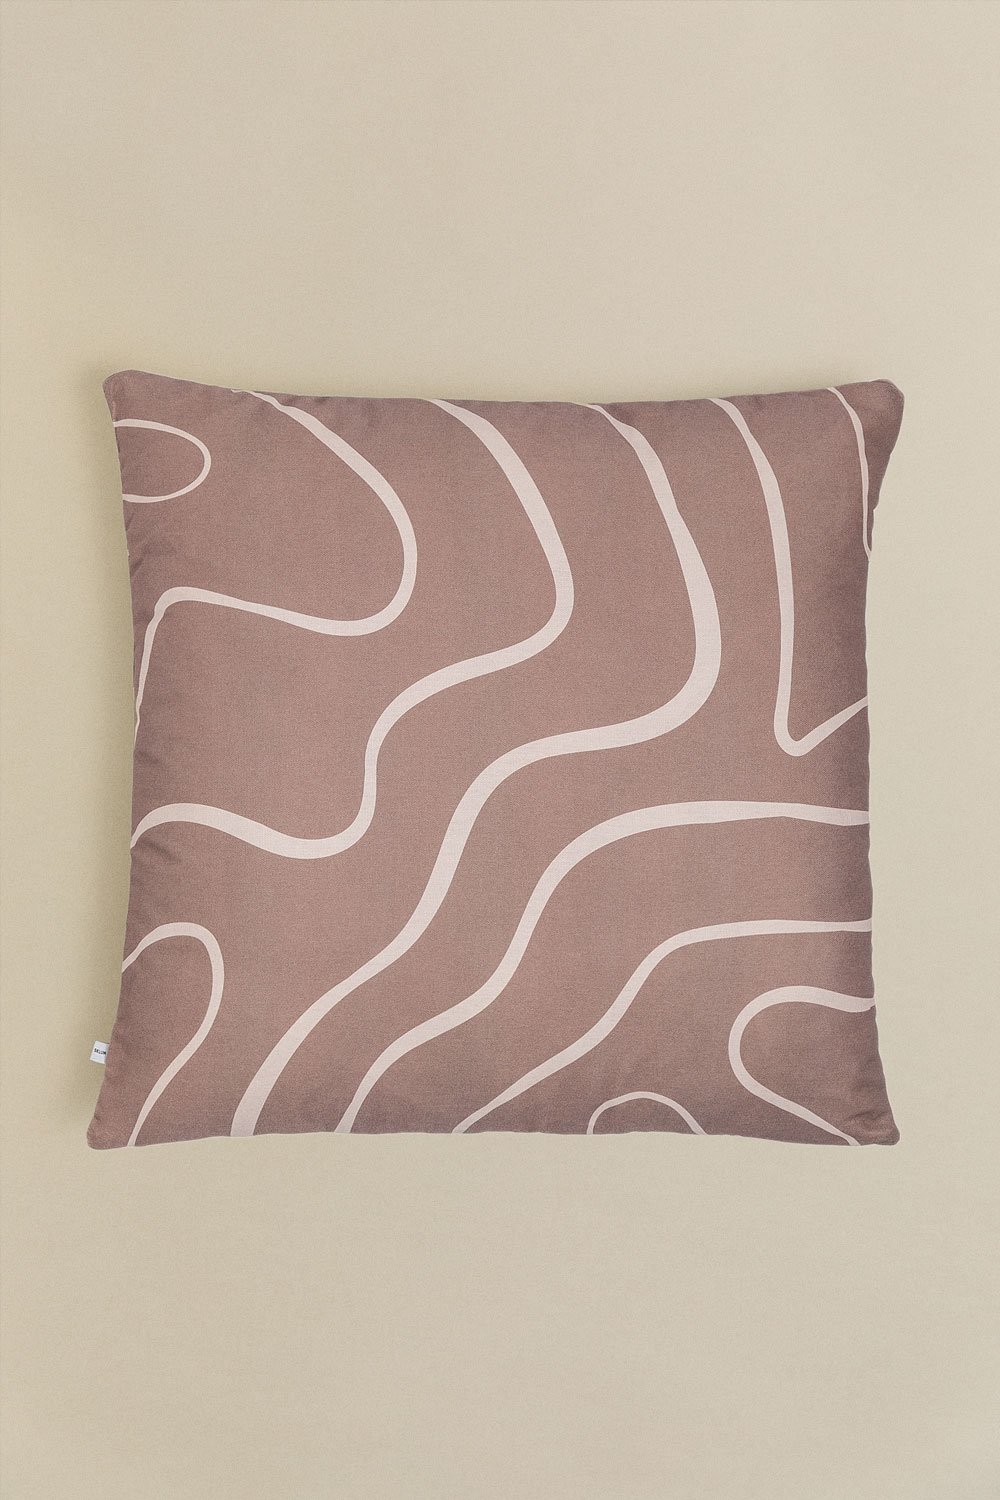 Federa per cuscino quadrata in cotone (60x60 cm) Kirikou Style, immagine della galleria 1